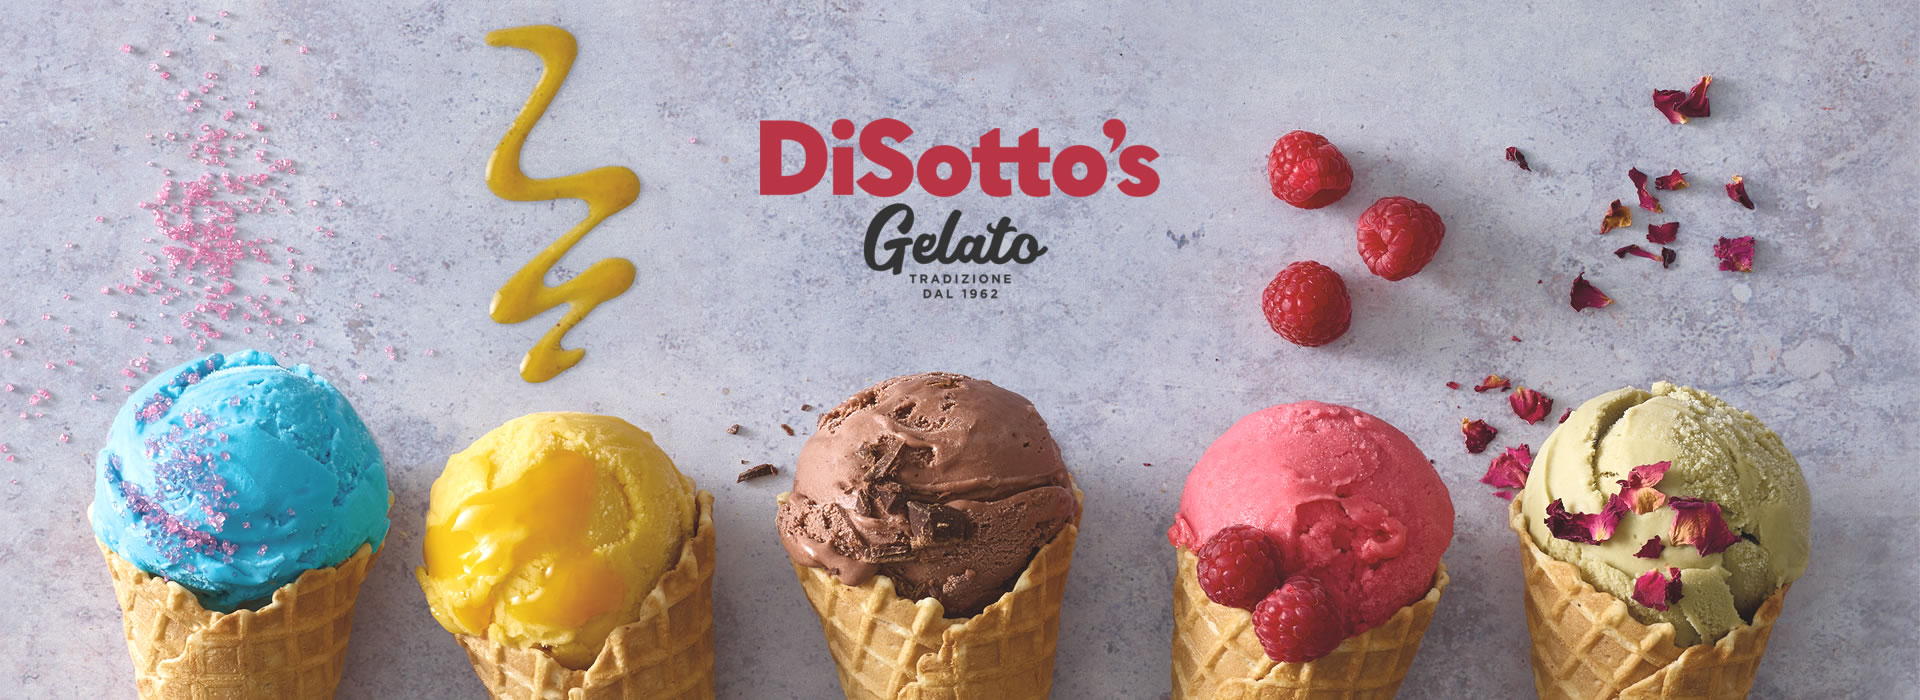 Disotto Gelato and Ice Cream